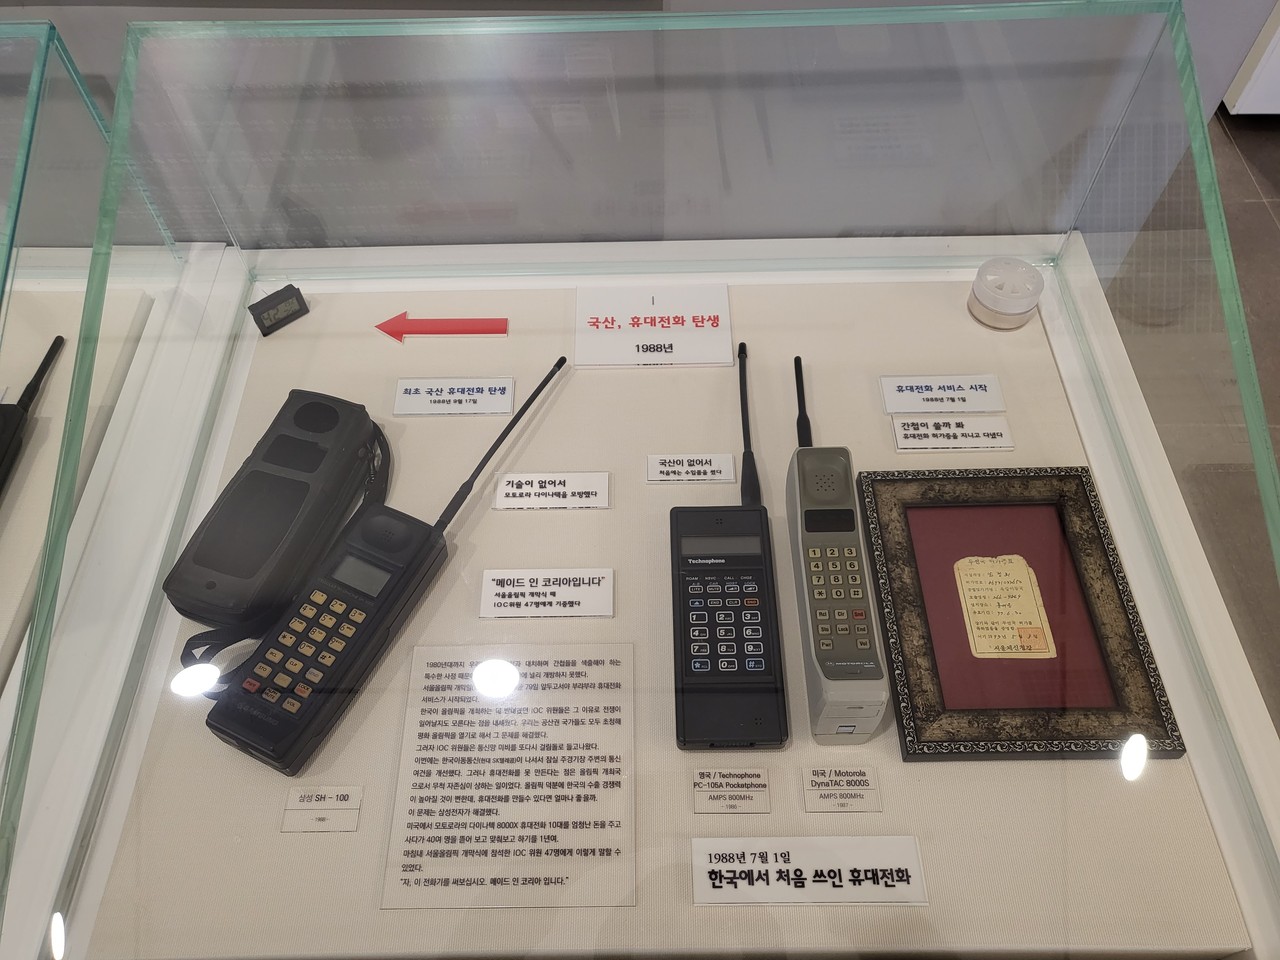 역사관 안에 1988년 7월 1일 한국에서 처음 쓰인 휴대전화와 1988년 9월 17일 최초 국내에서 만들어진 휴대전화가 전시돼 있다.